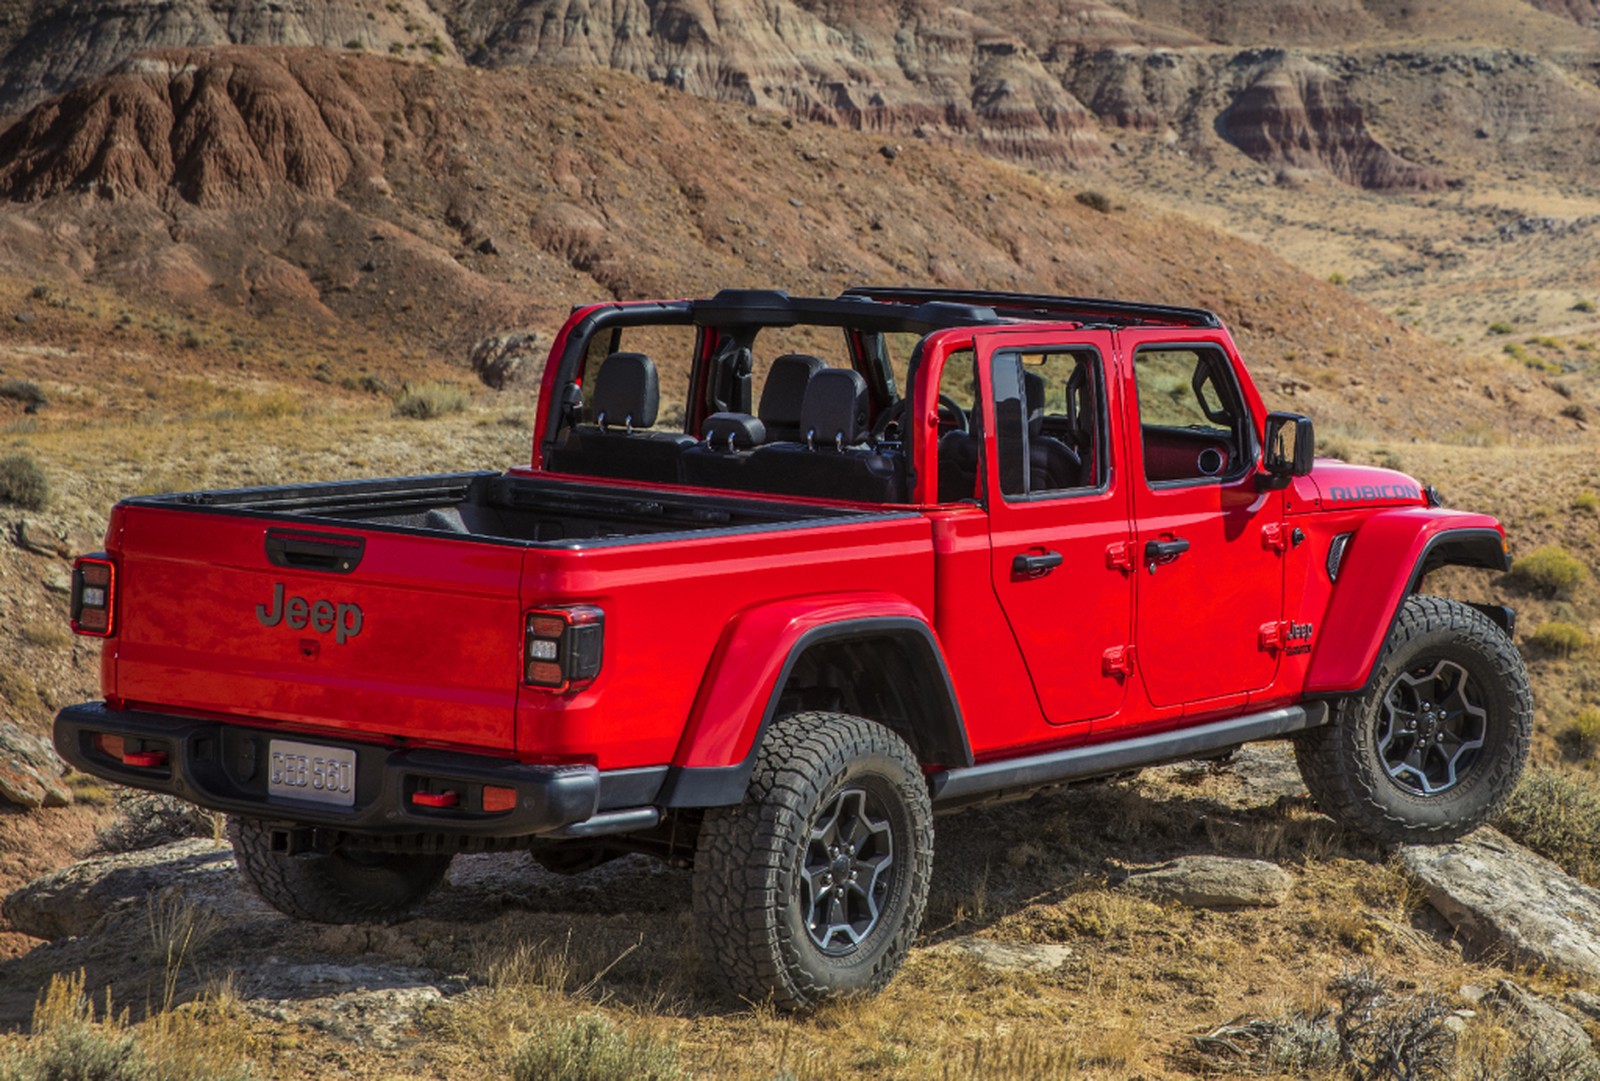 Jeep Gladiator Rubicon vermelha em uma paisagem de deserto nos Estados Unidos